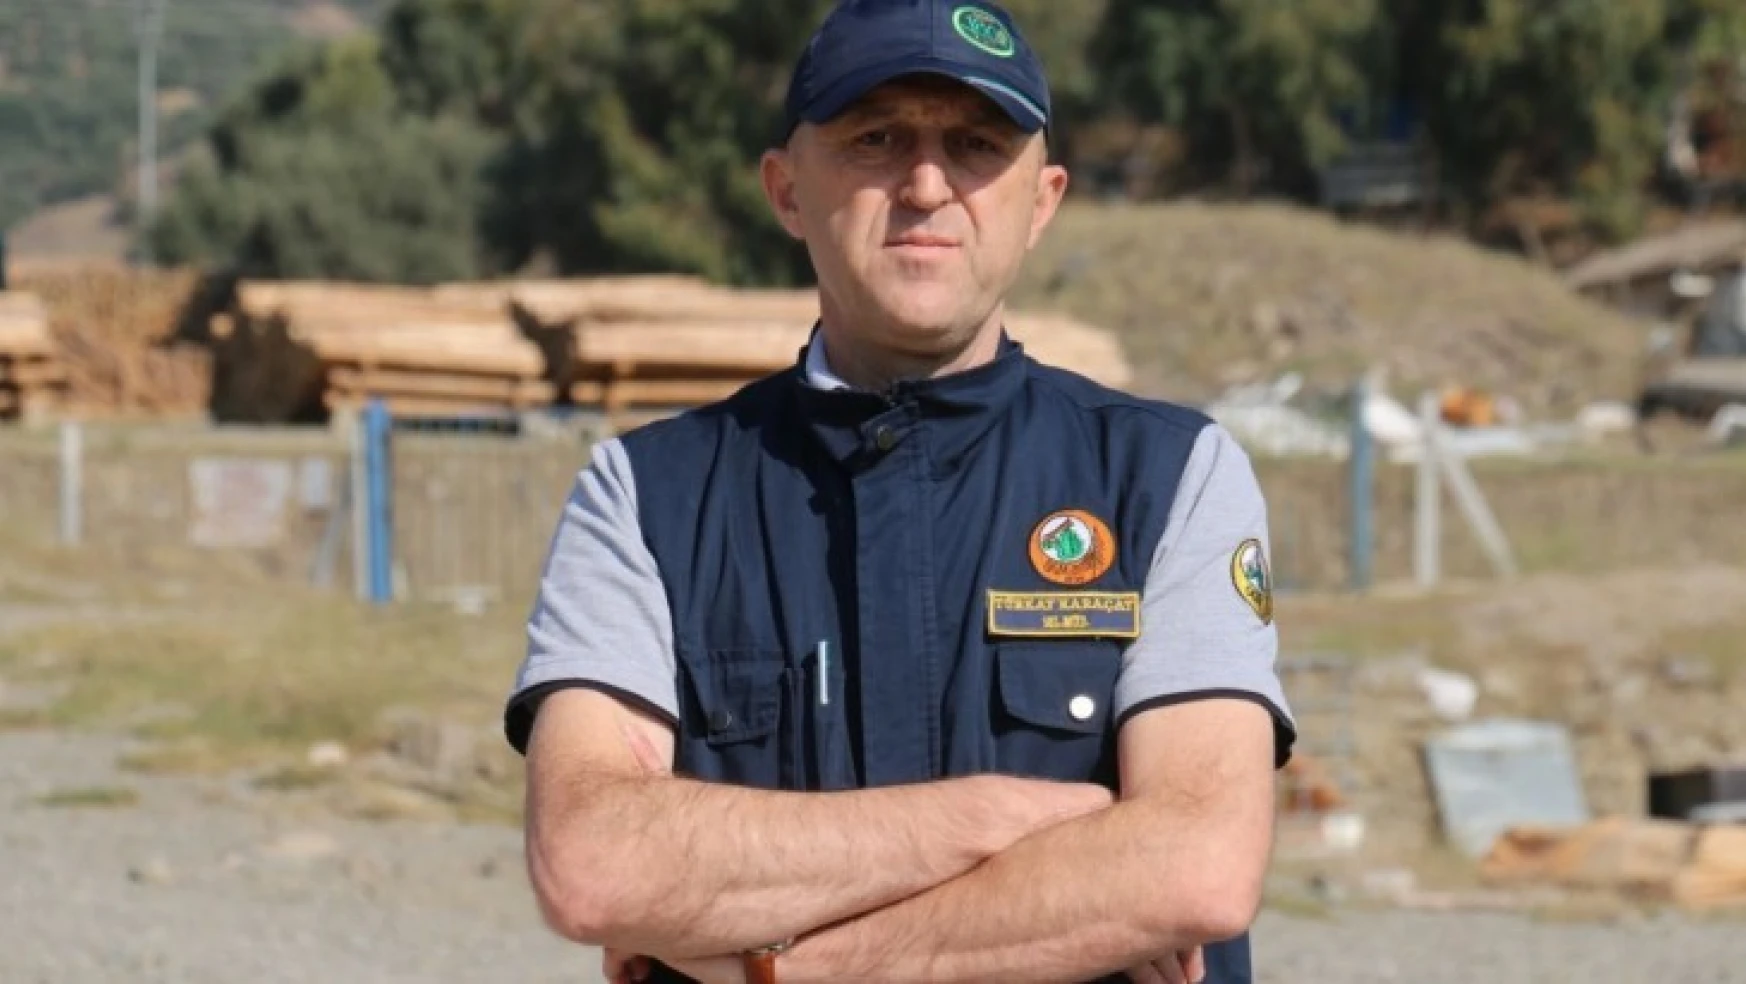 Orman Müdürü Türkay Karaçay, Muğla'ya atandı